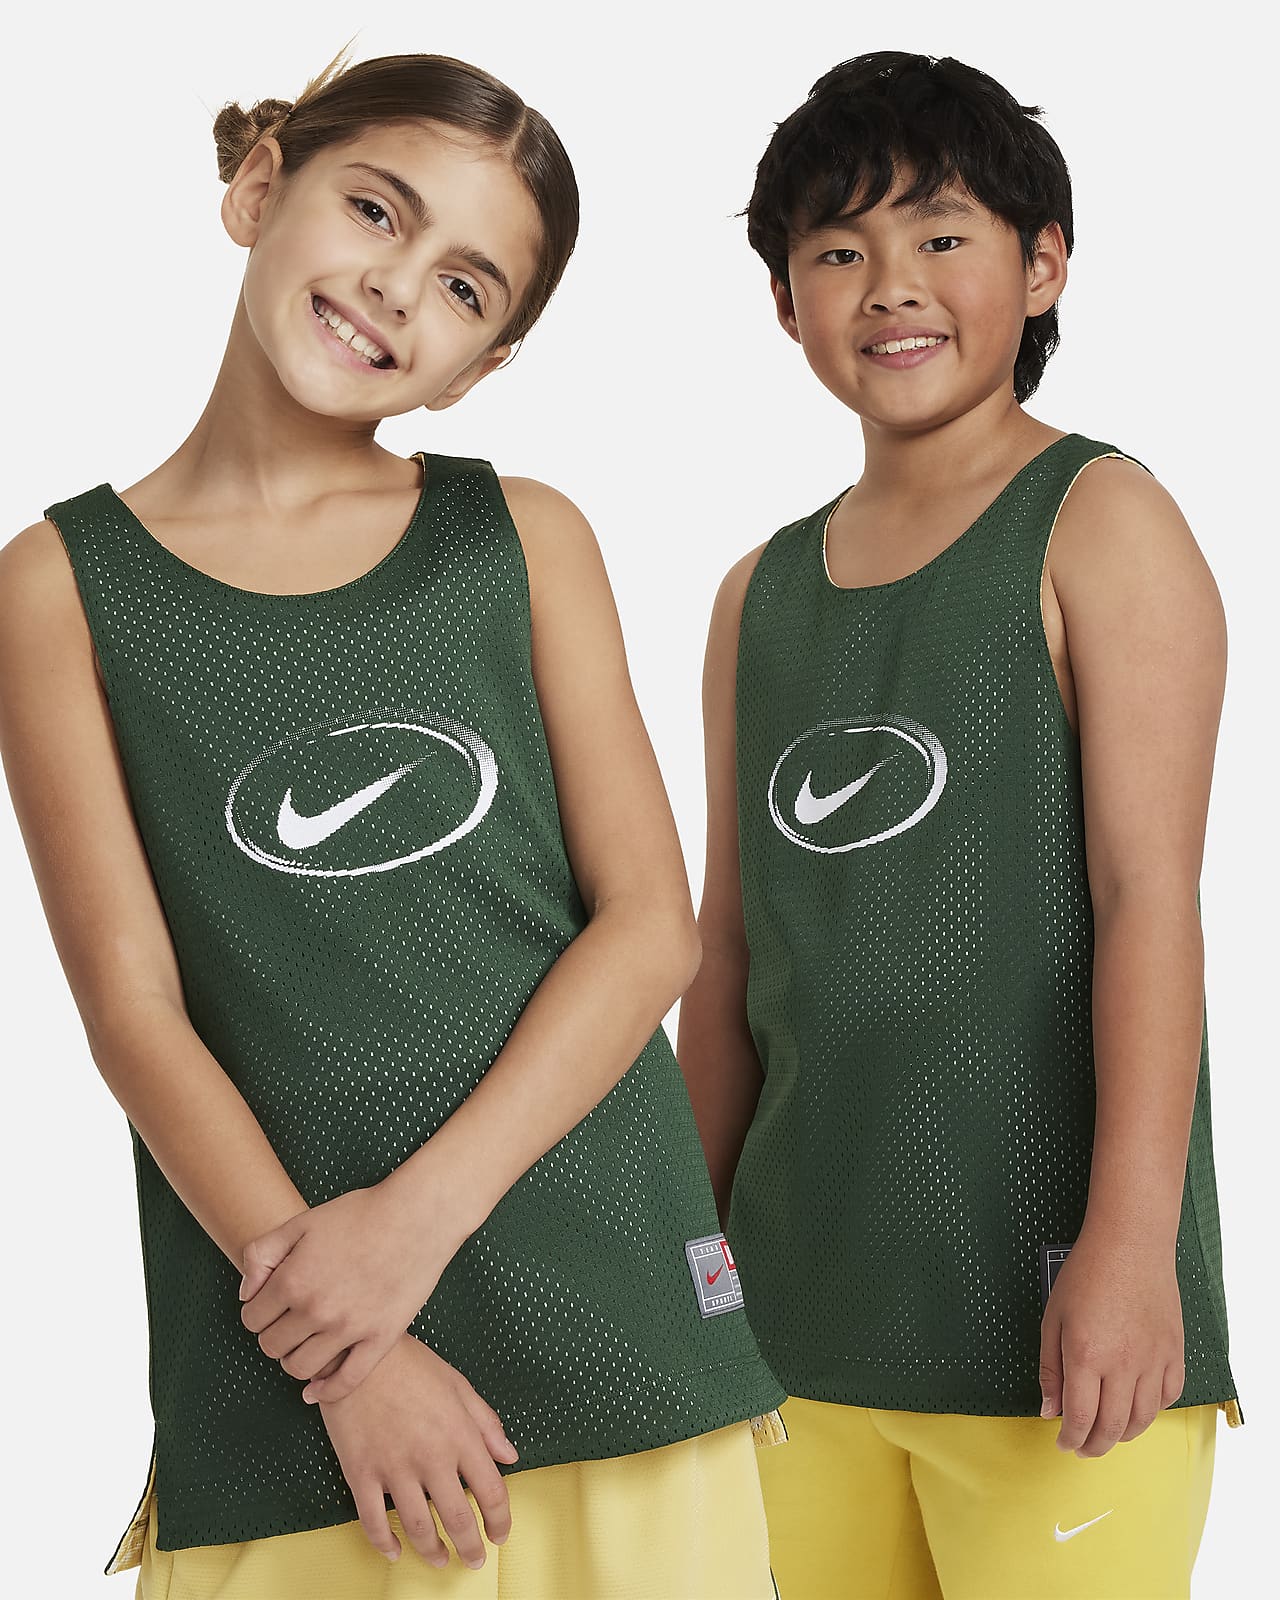 เสื้อแข่งเด็กโตใส่ได้ 2 ด้าน Nike Culture of Basketball